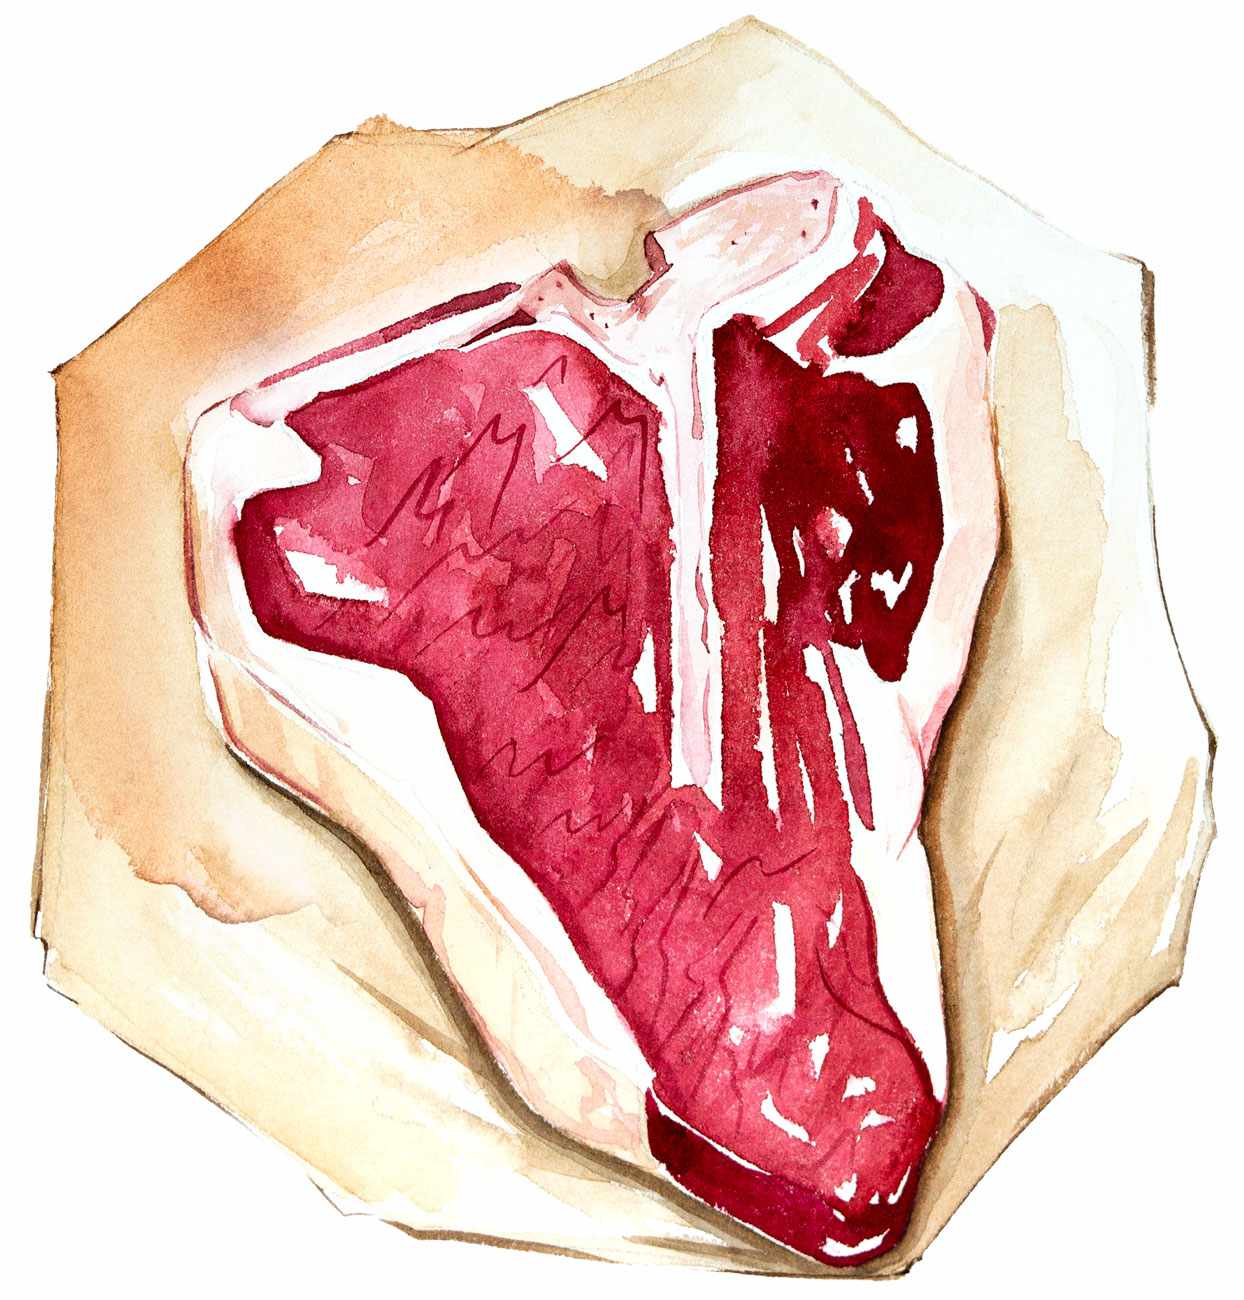 Porterhouse steak illustration